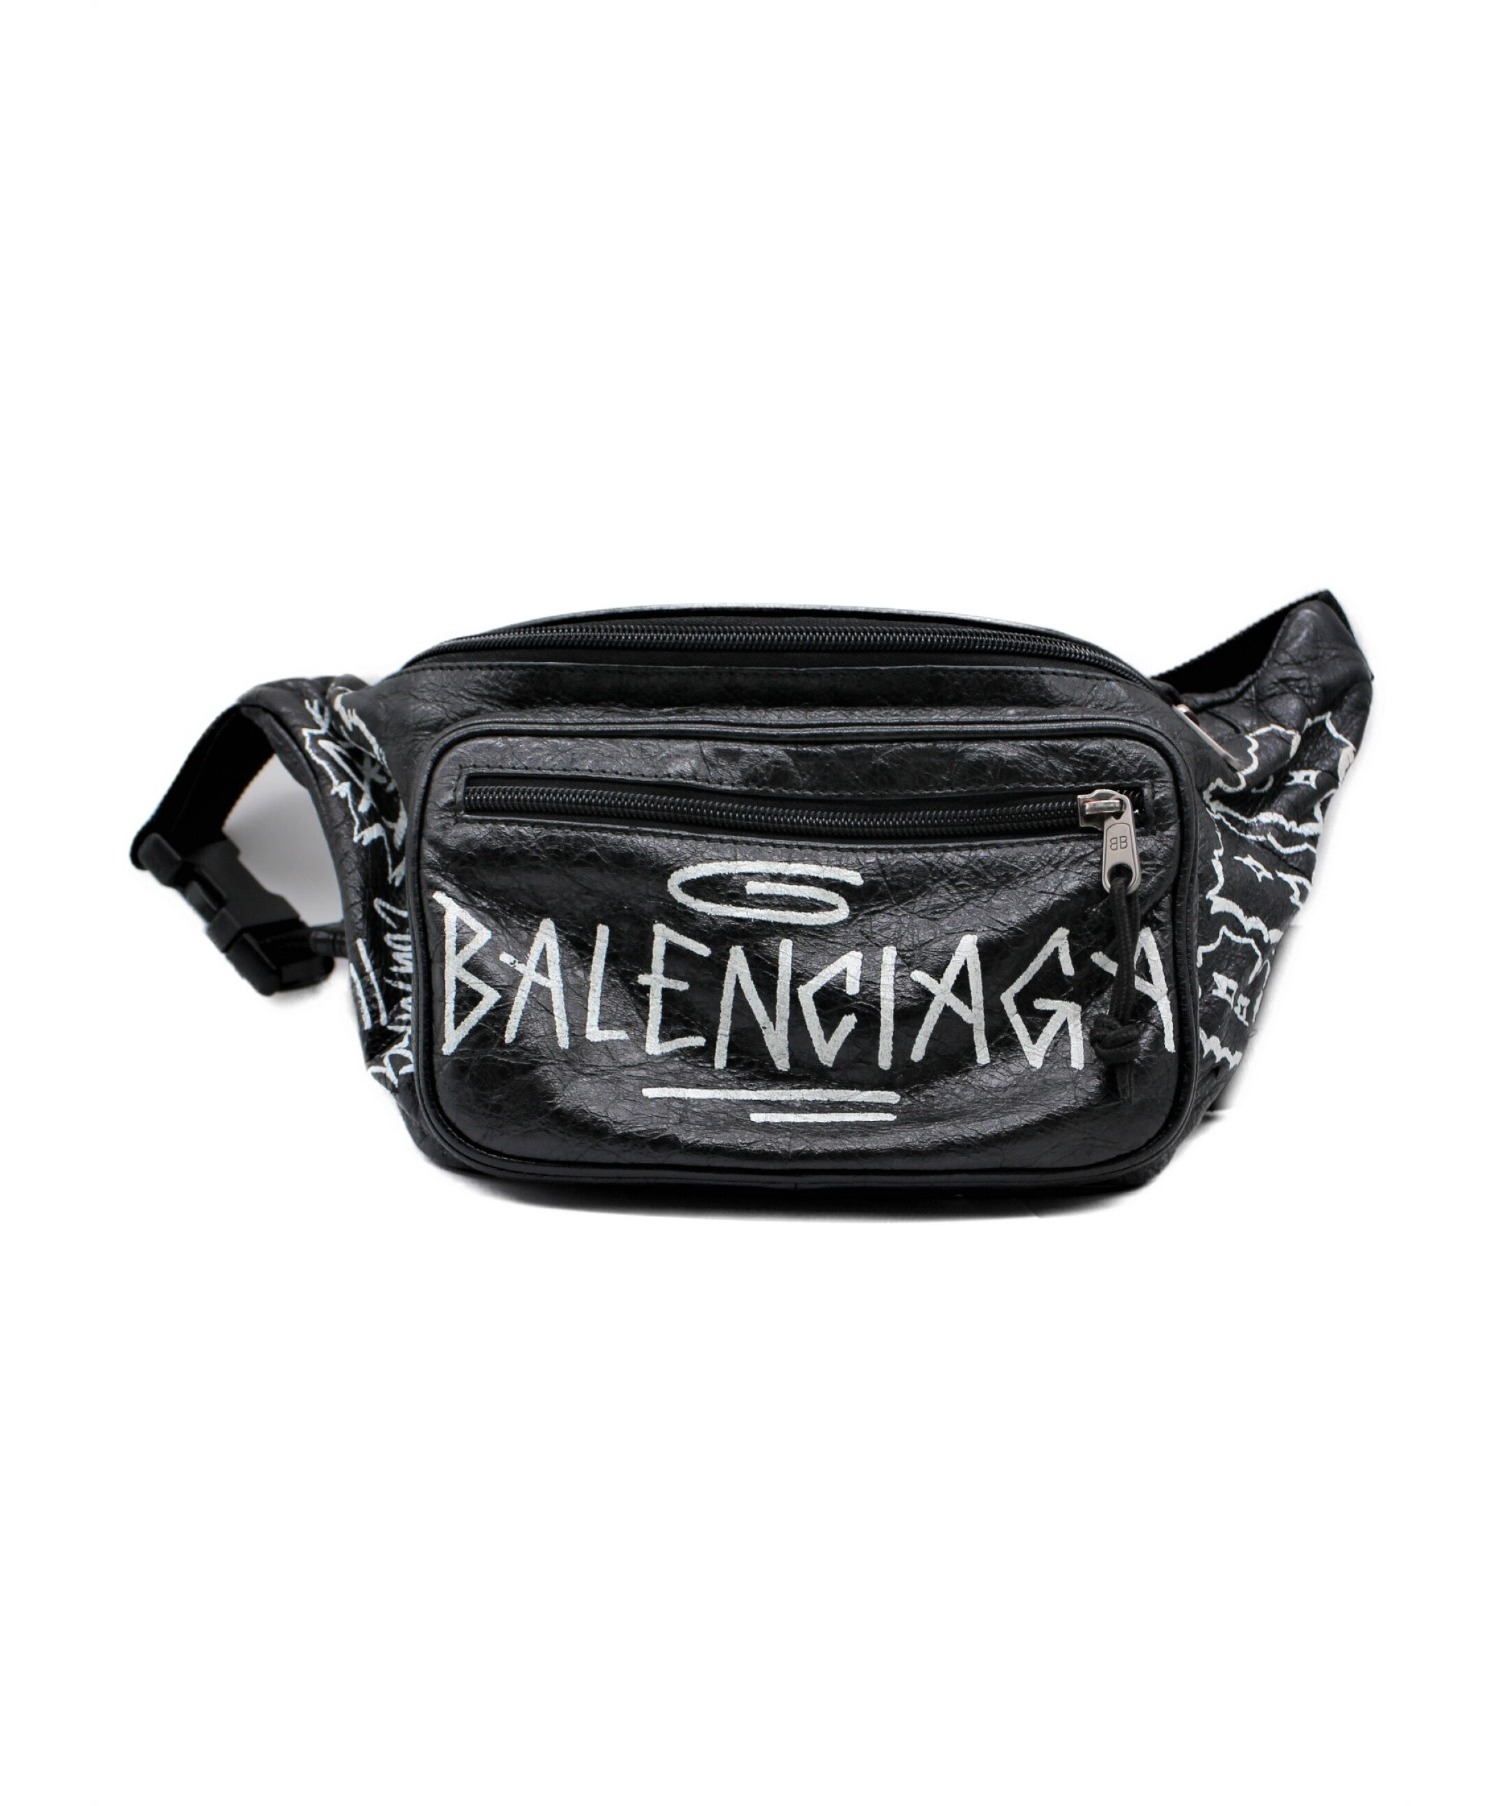 BALENCIAGA (バレンシアガ) エクスプローラー グラフィティ ブラック サイズ:- 529550 1060 X・535269